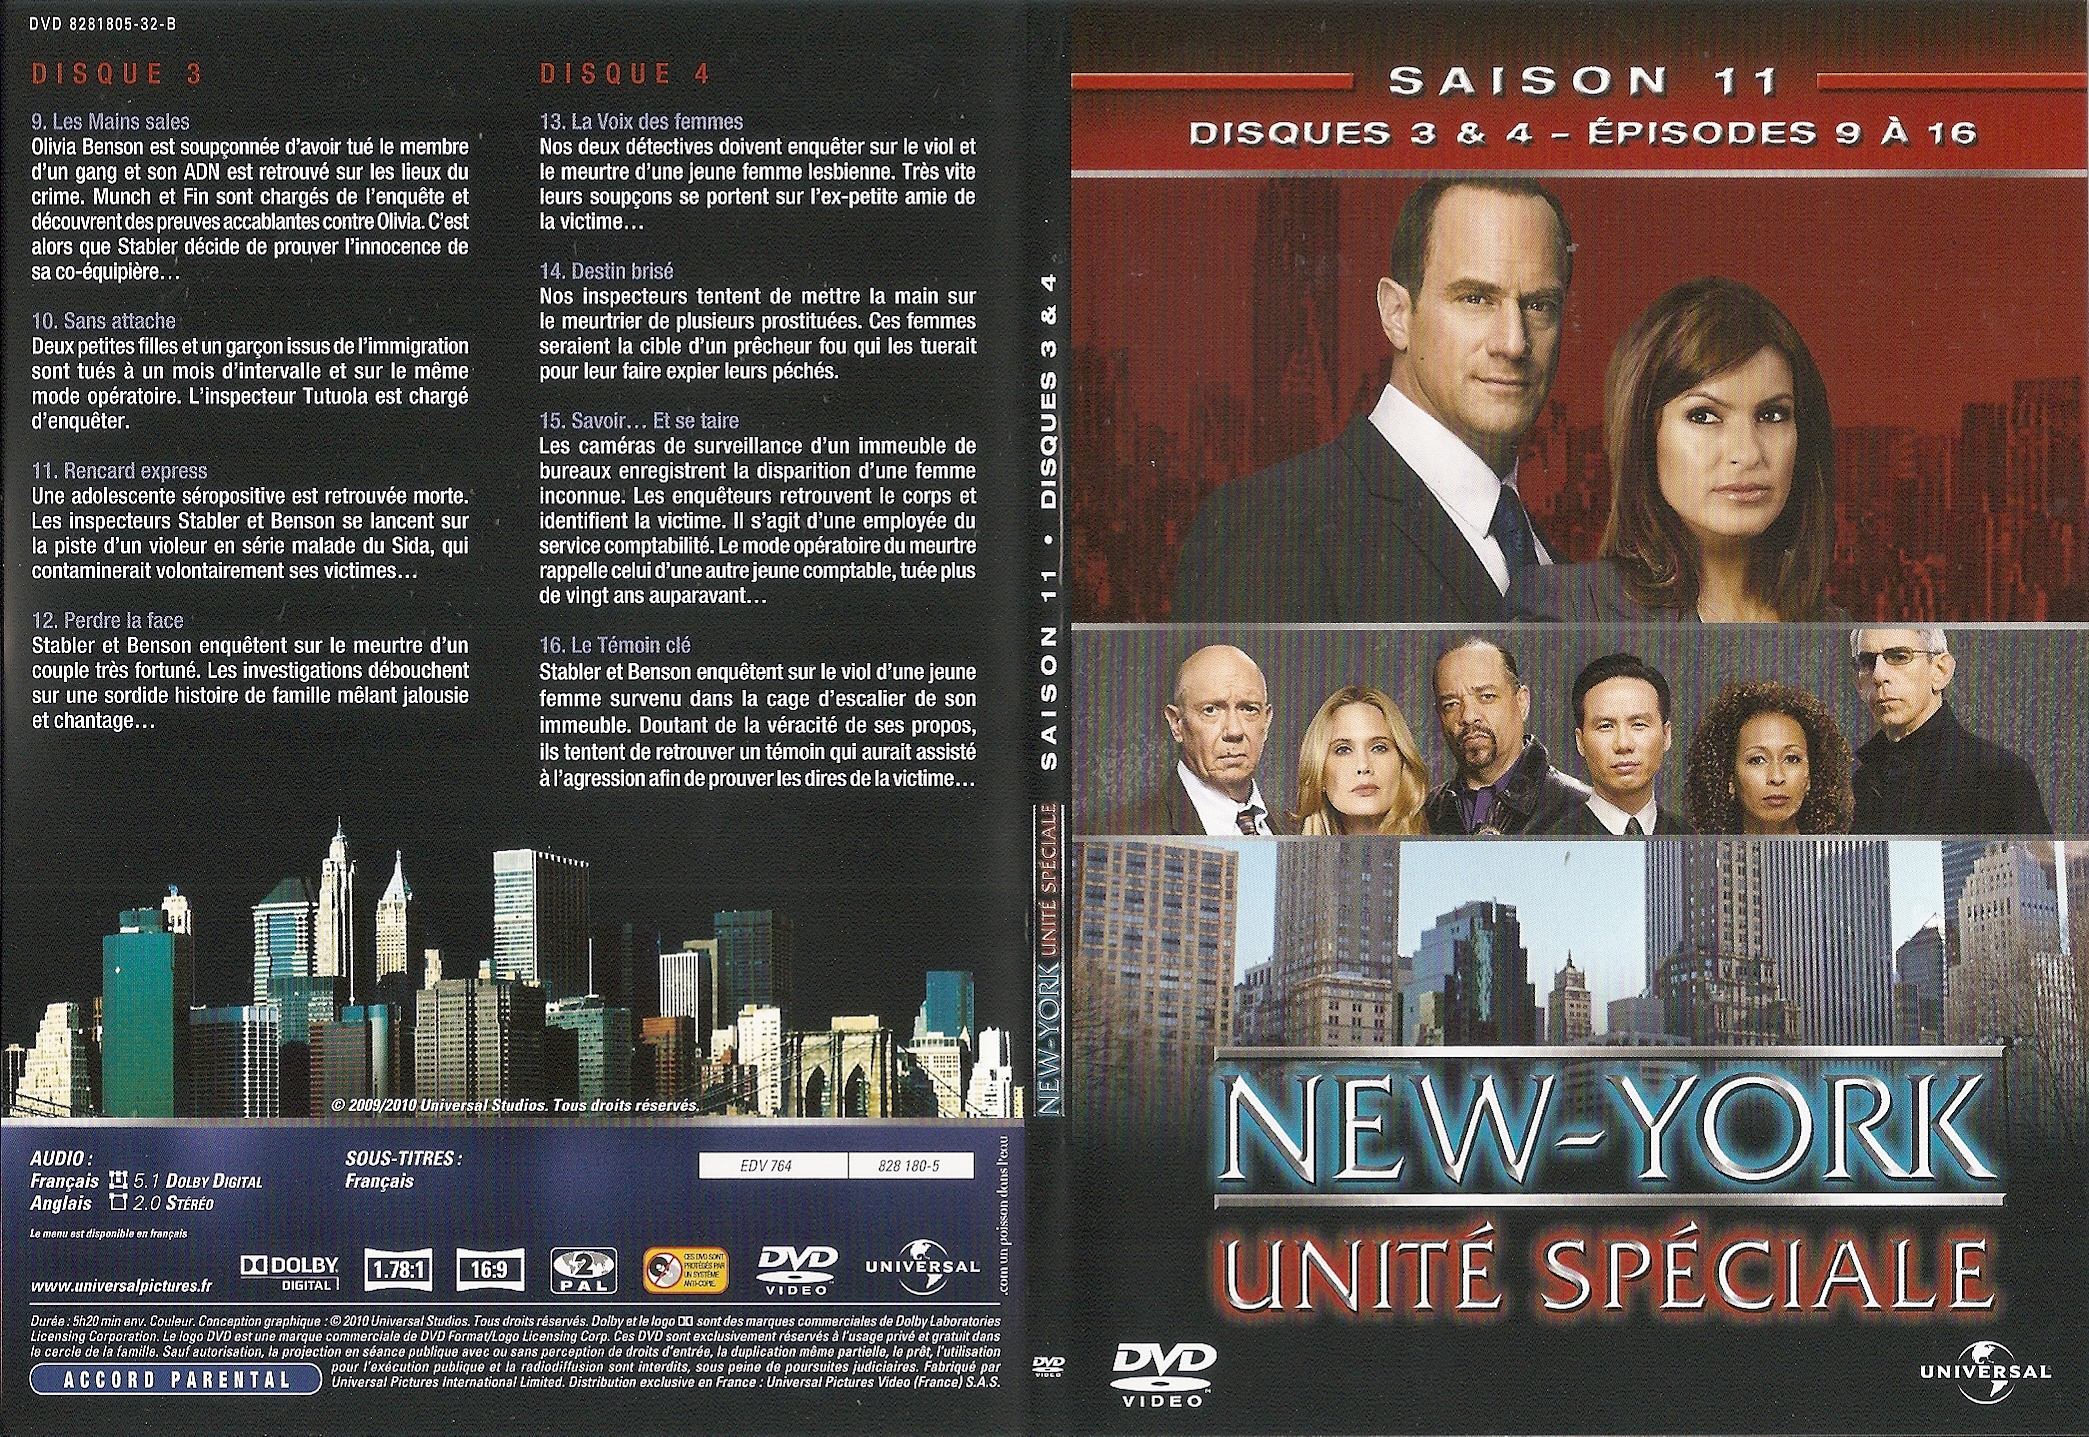 Jaquette DVD New York unit spciale saison 11 DVD 2